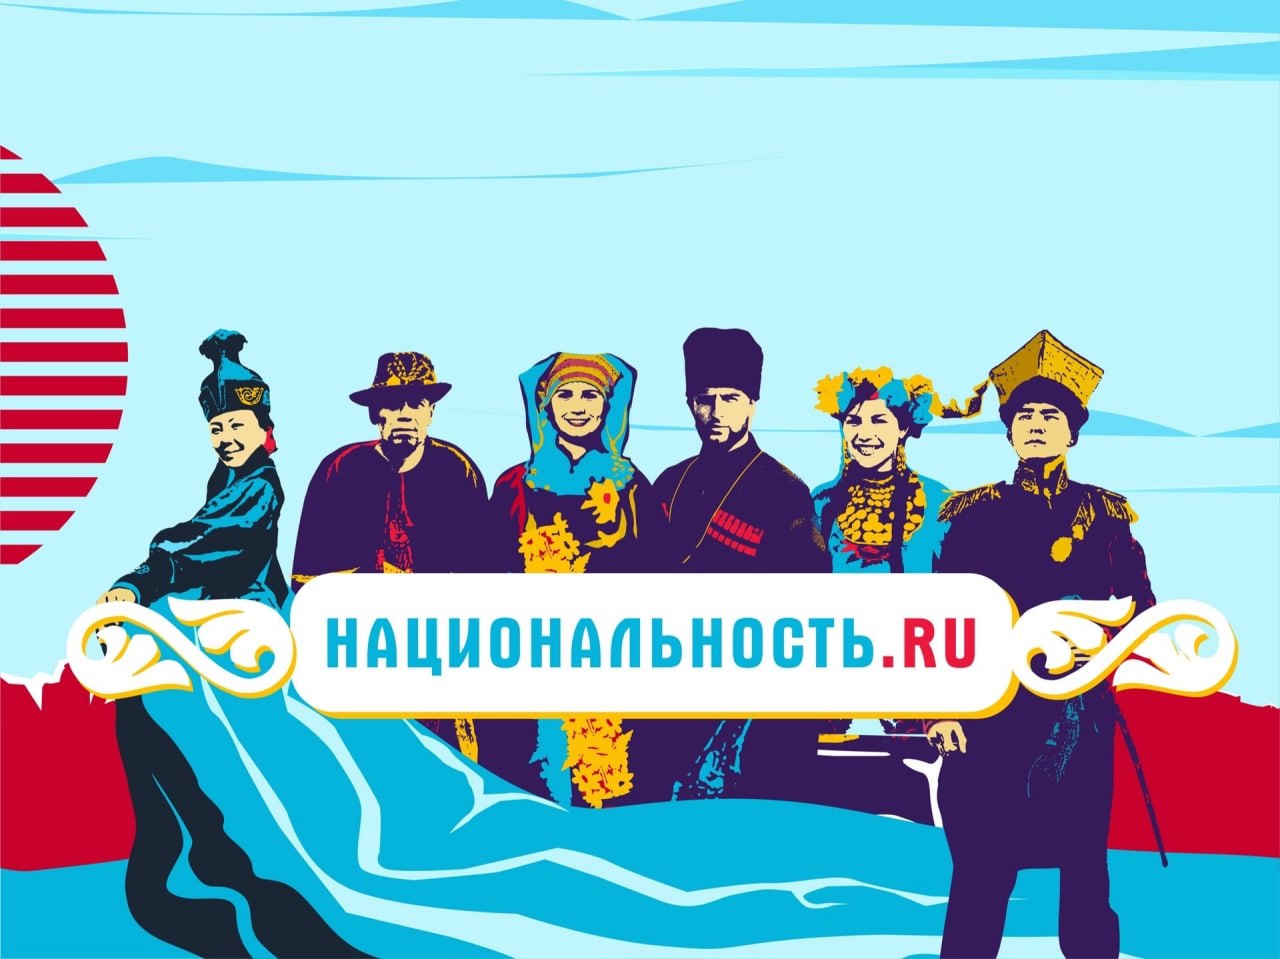 Вышли первые выпуски тревел-шоу «Национальность.ru»